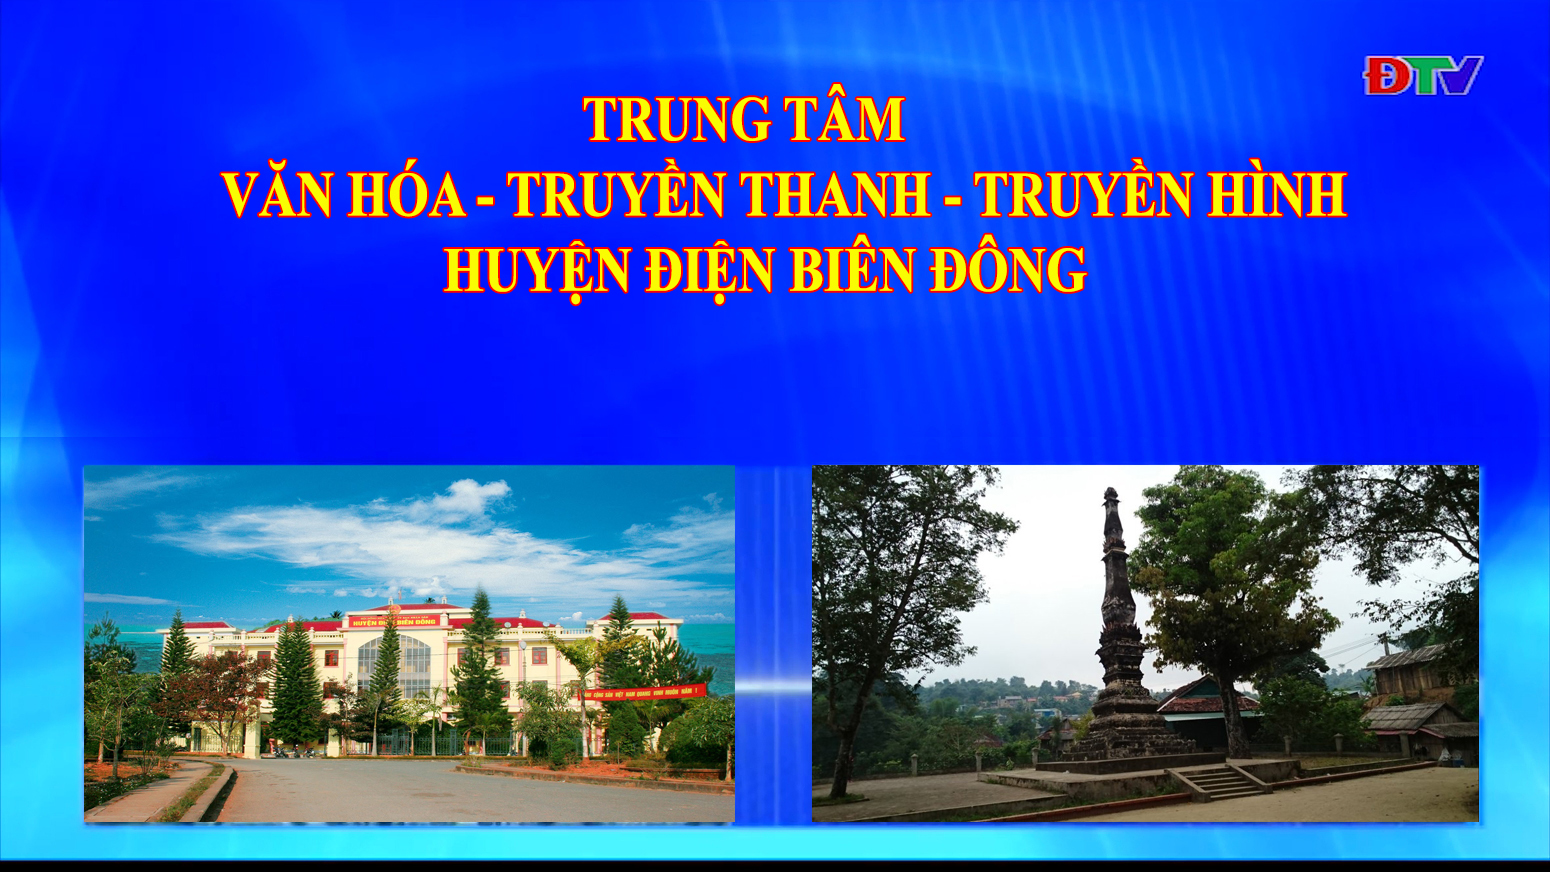 Trung tâm VH-TTTH huyên Điện Biên Đông (Ngày 17-10-2020)